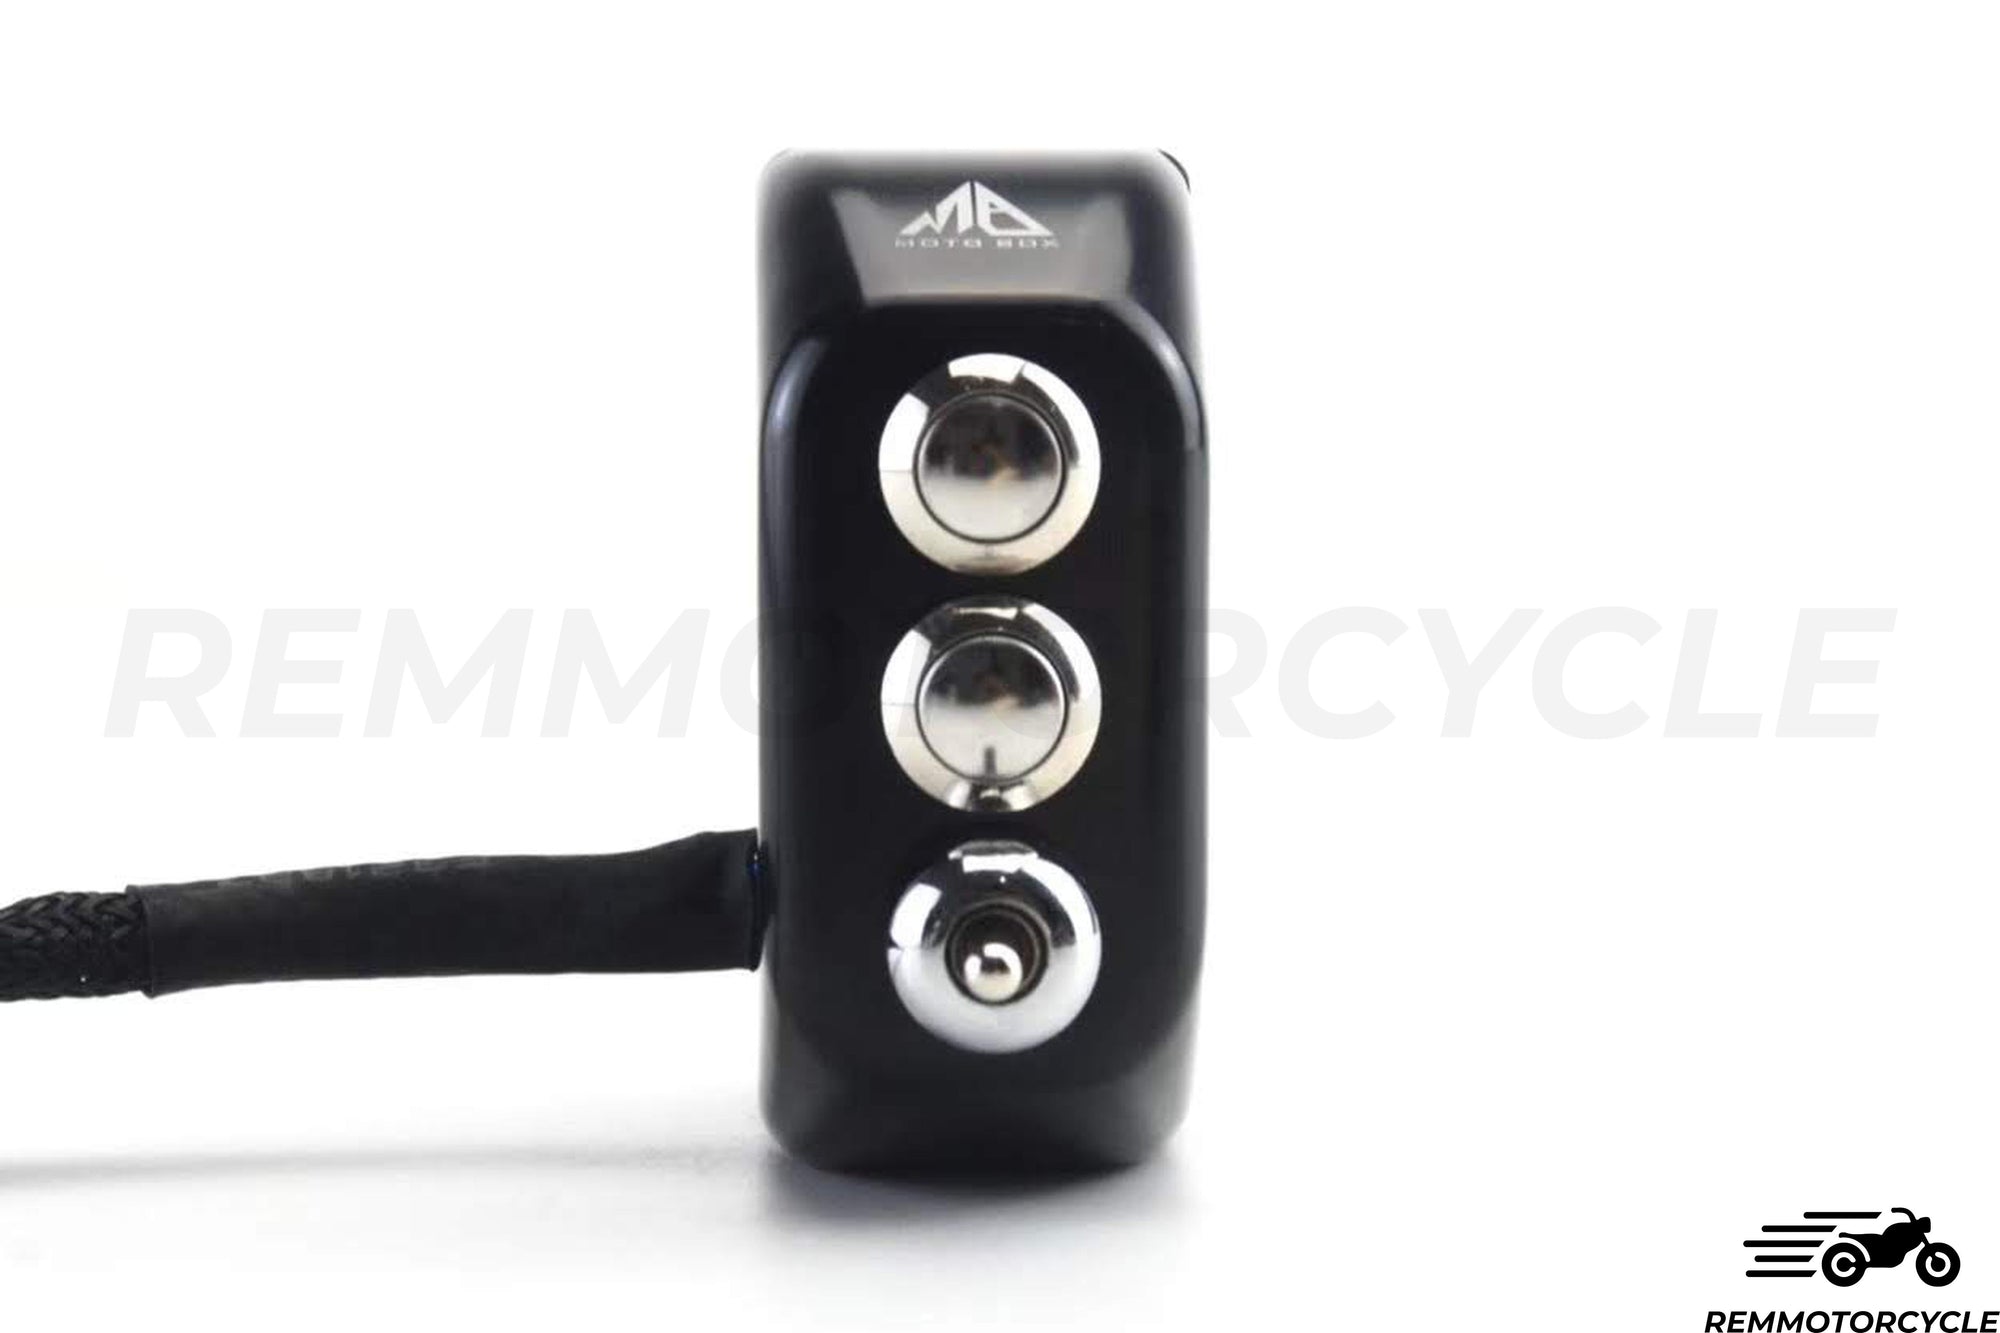 Przyciski Commodo Moto CNC 3 + czarne lub srebrne wskaźniki